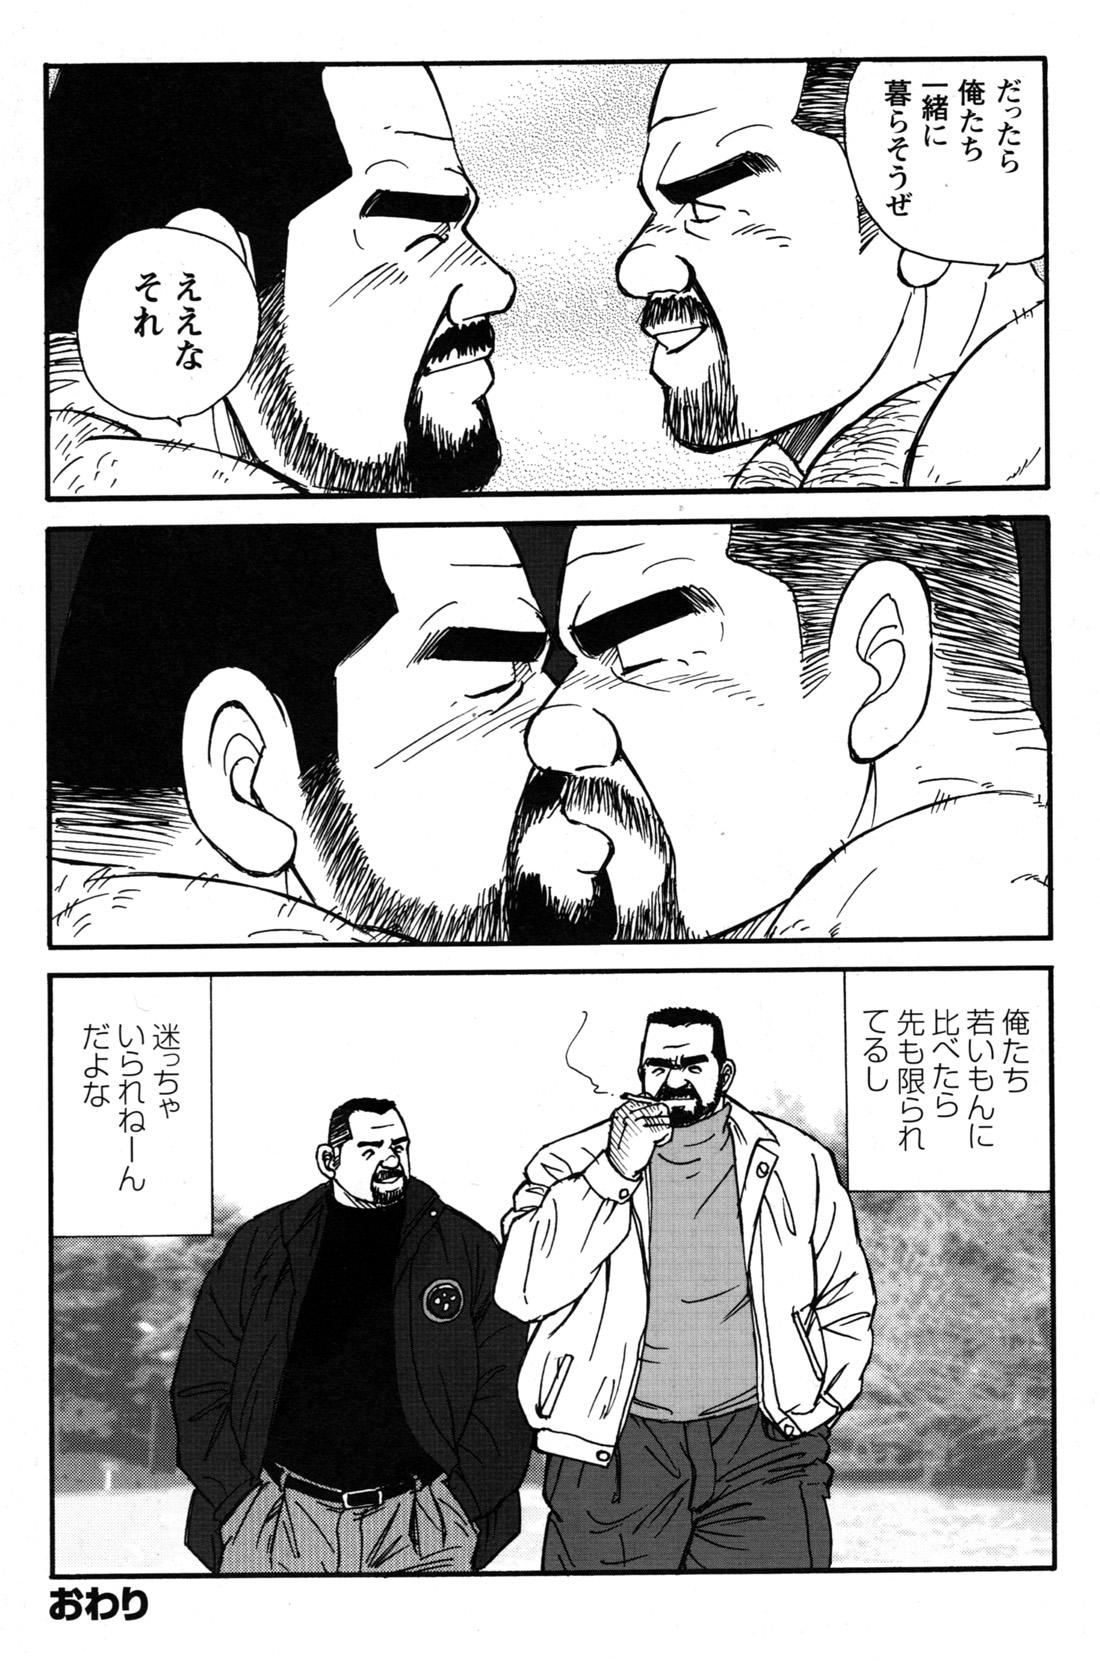 Comic G-men Gaho No.09 Gacchibi Zeme 194